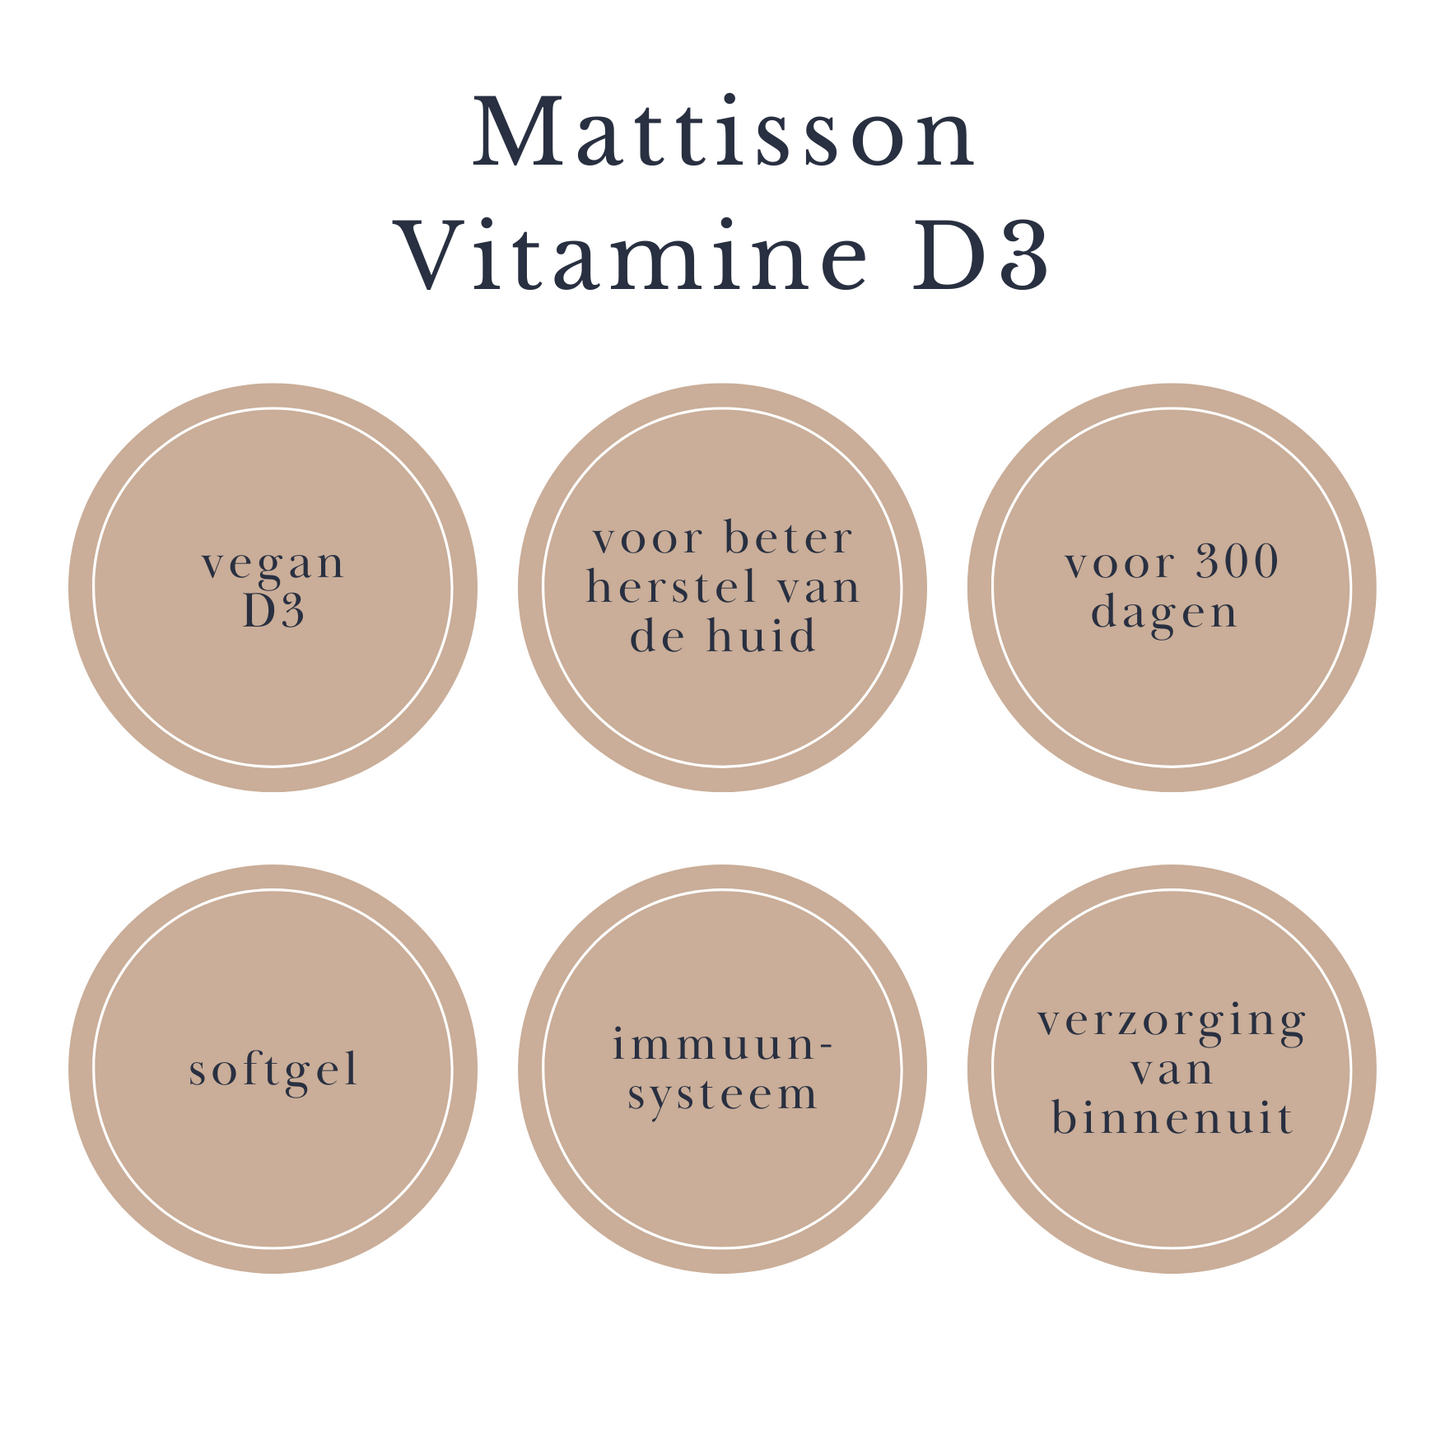 Mattisson Vegan Vitamine D3 beautysups